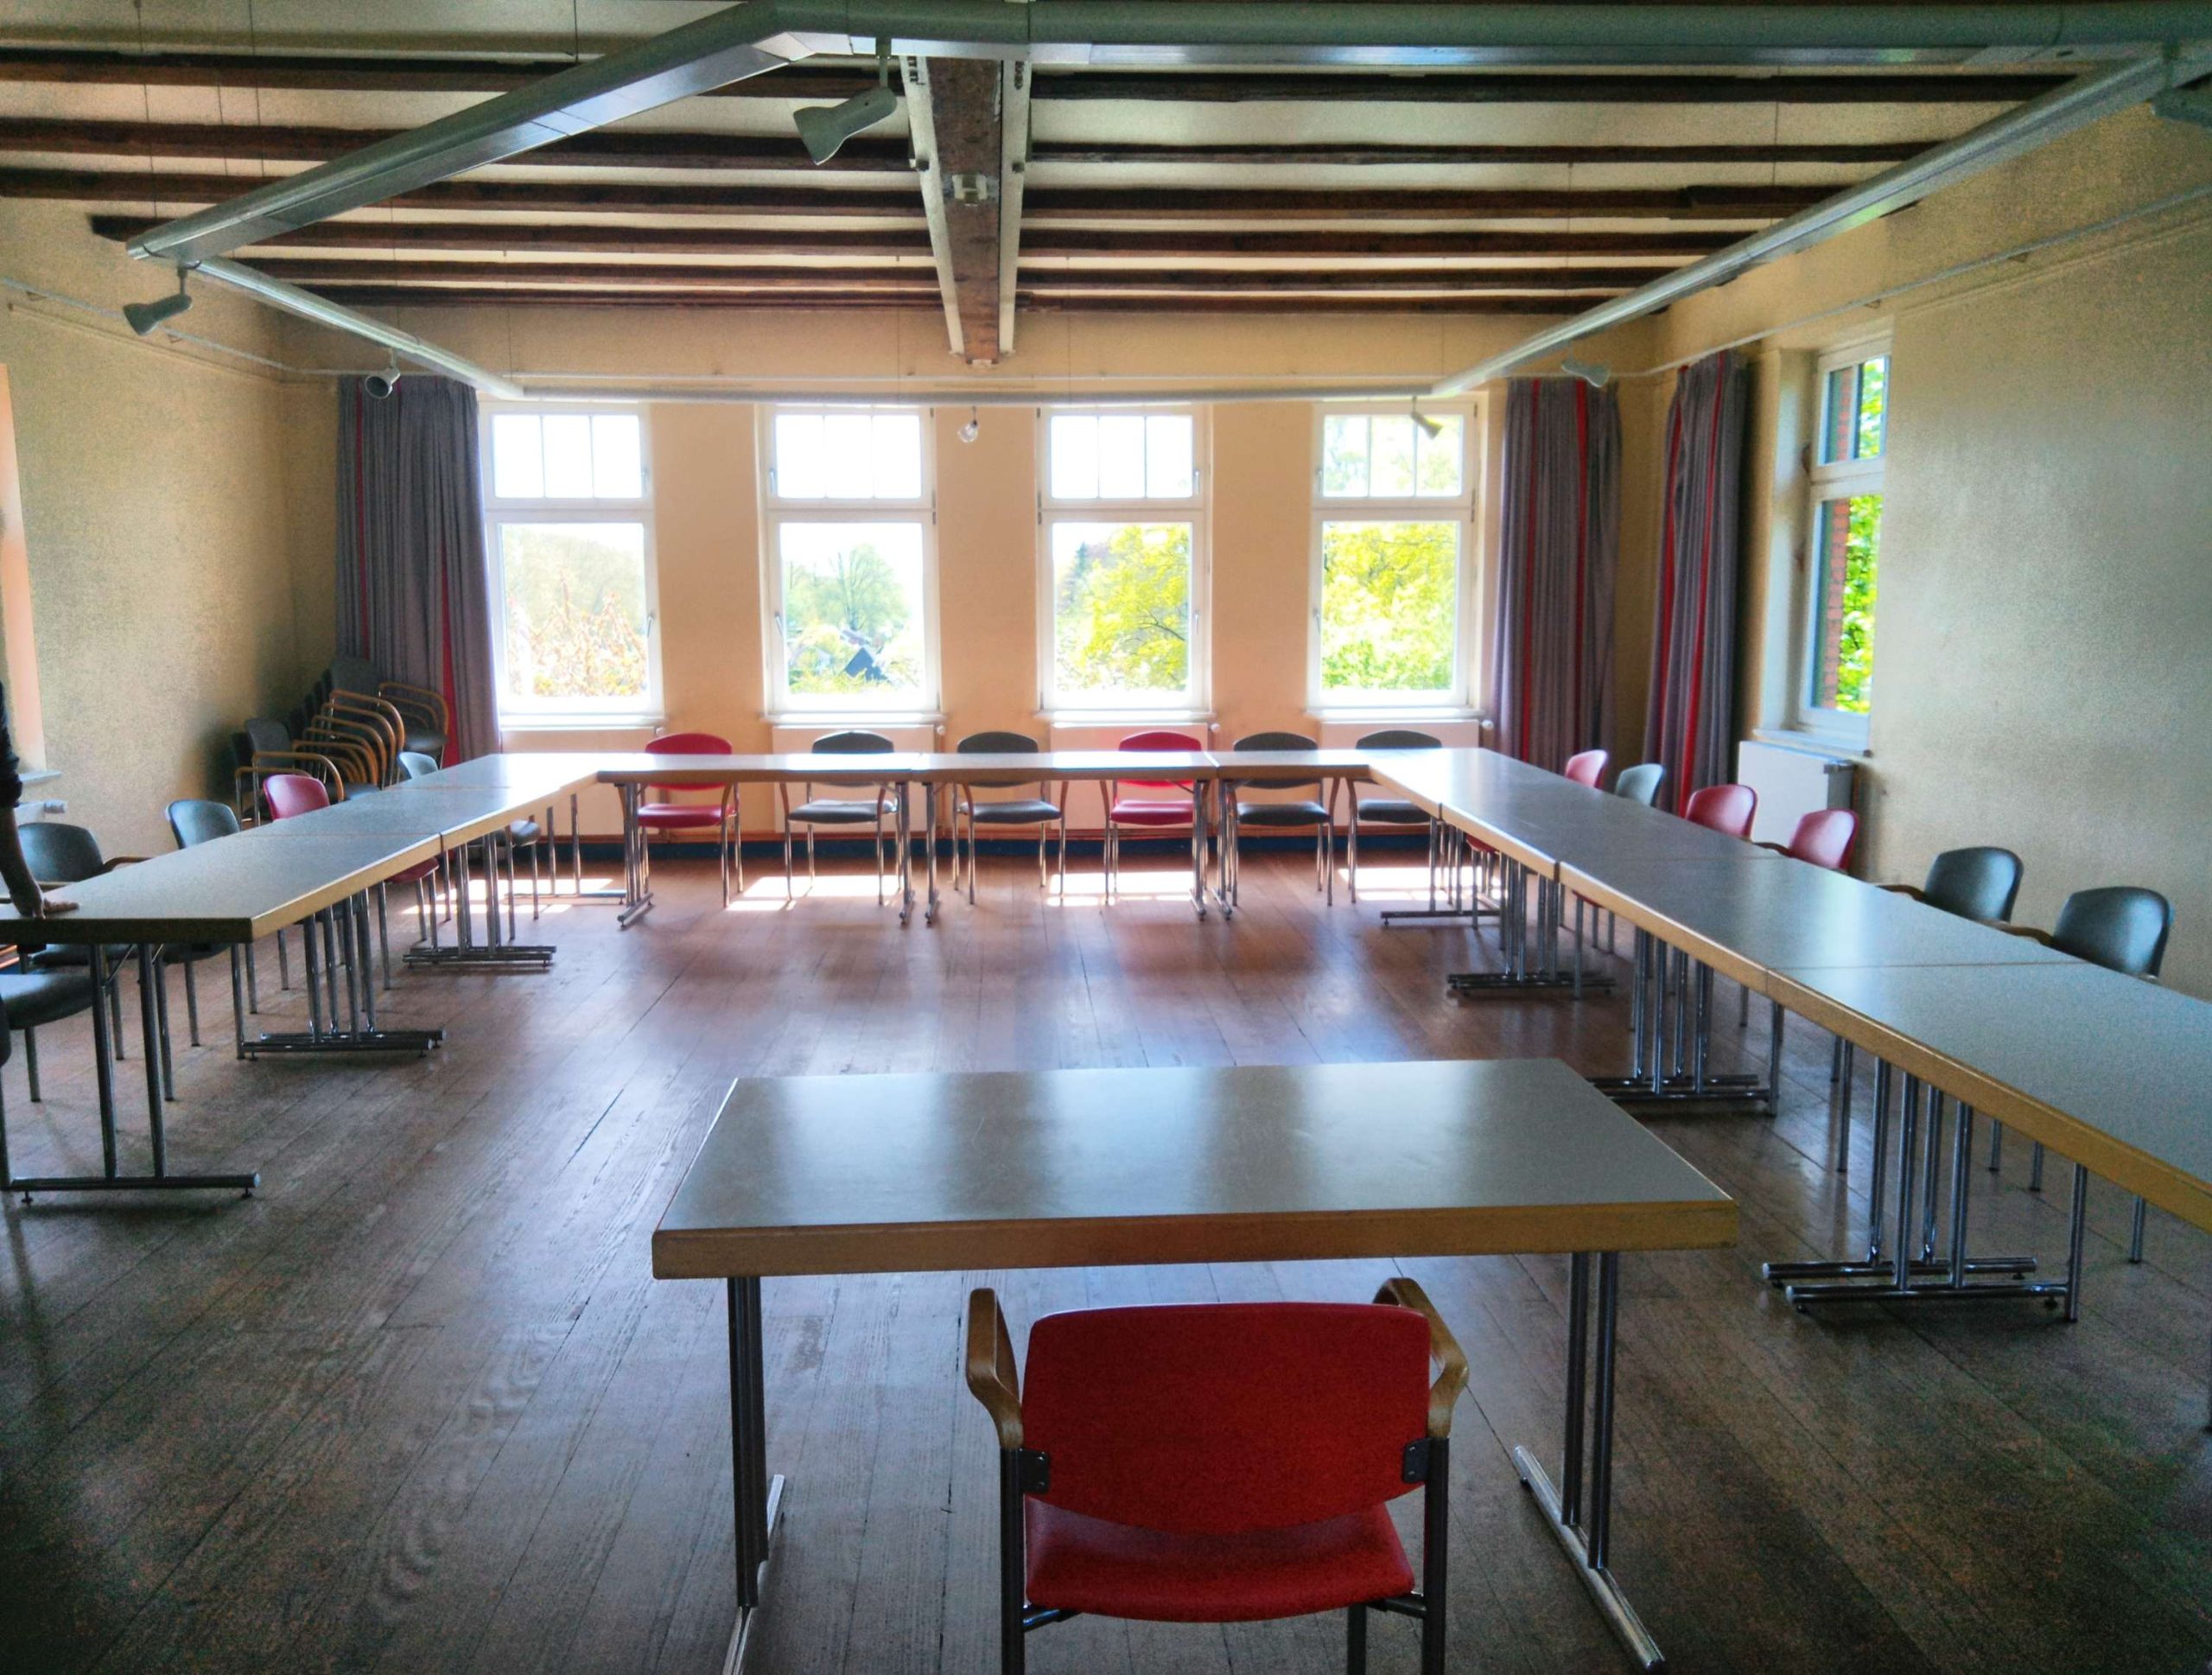 Unser Bahnhof heller Seminar-Raum mit Tischen und Stühlen in U-Form